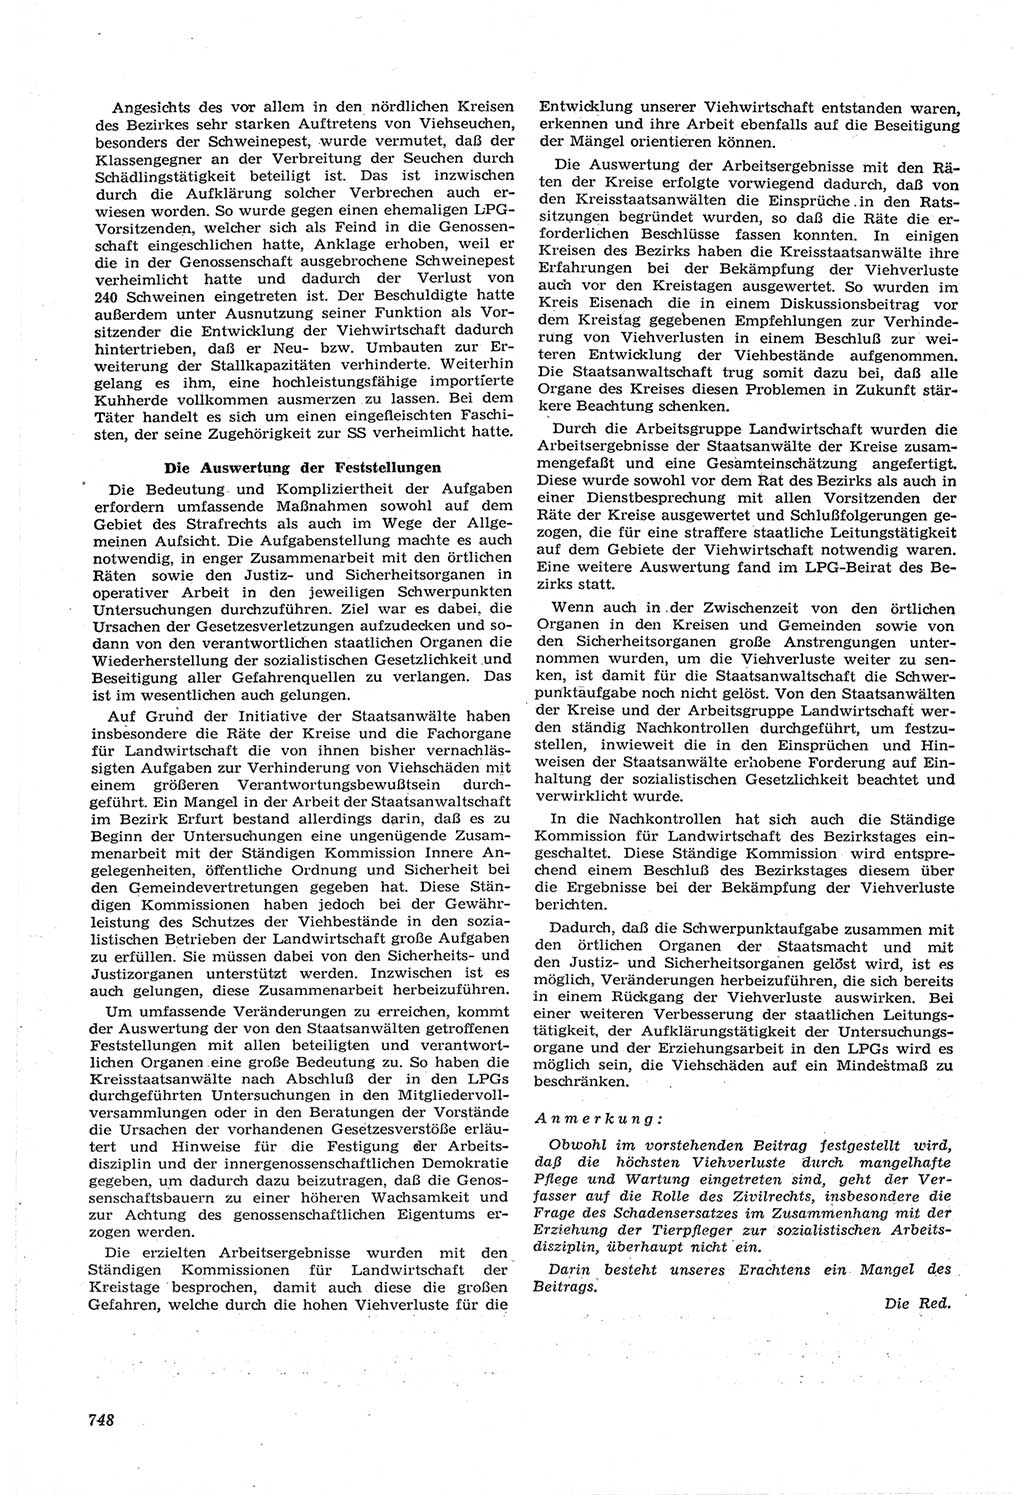 Neue Justiz (NJ), Zeitschrift für Recht und Rechtswissenschaft [Deutsche Demokratische Republik (DDR)], 14. Jahrgang 1960, Seite 748 (NJ DDR 1960, S. 748)